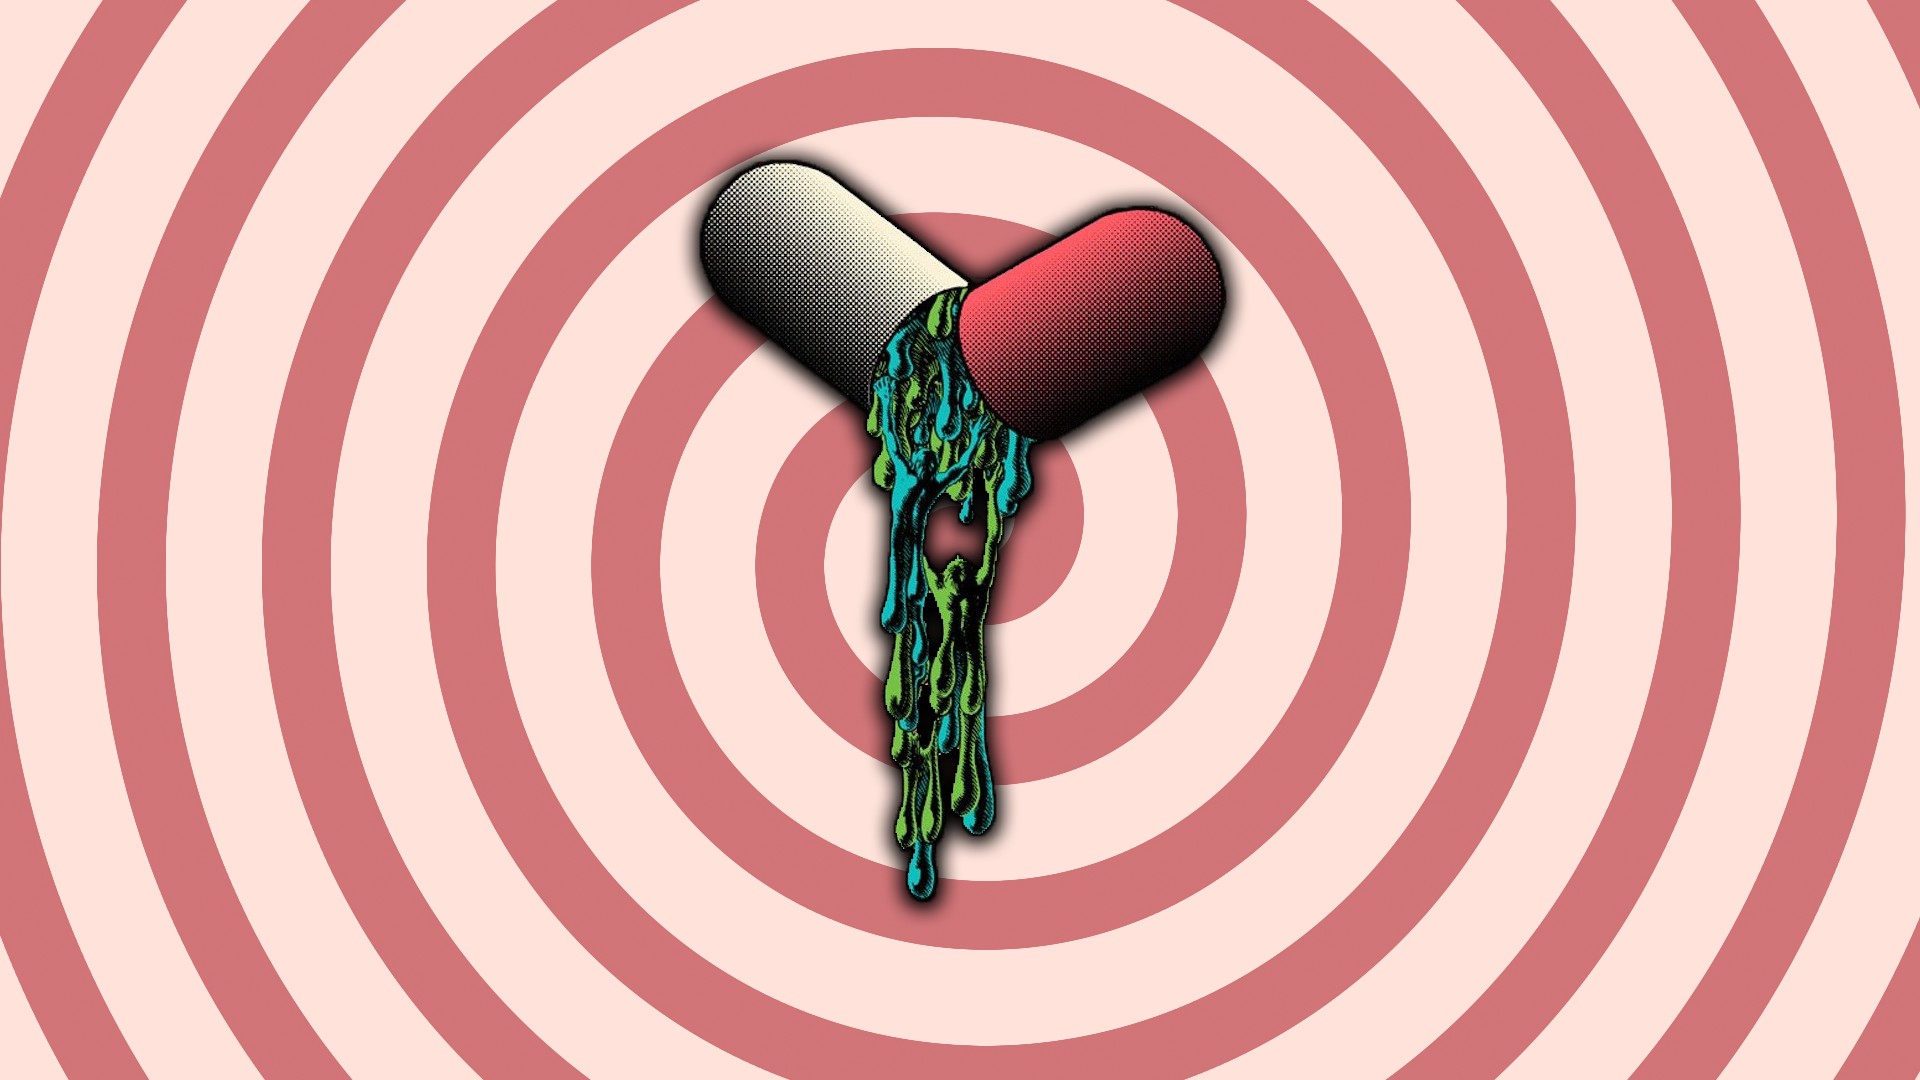 drugs, Spiral, Classic art, Pills Wallpaper